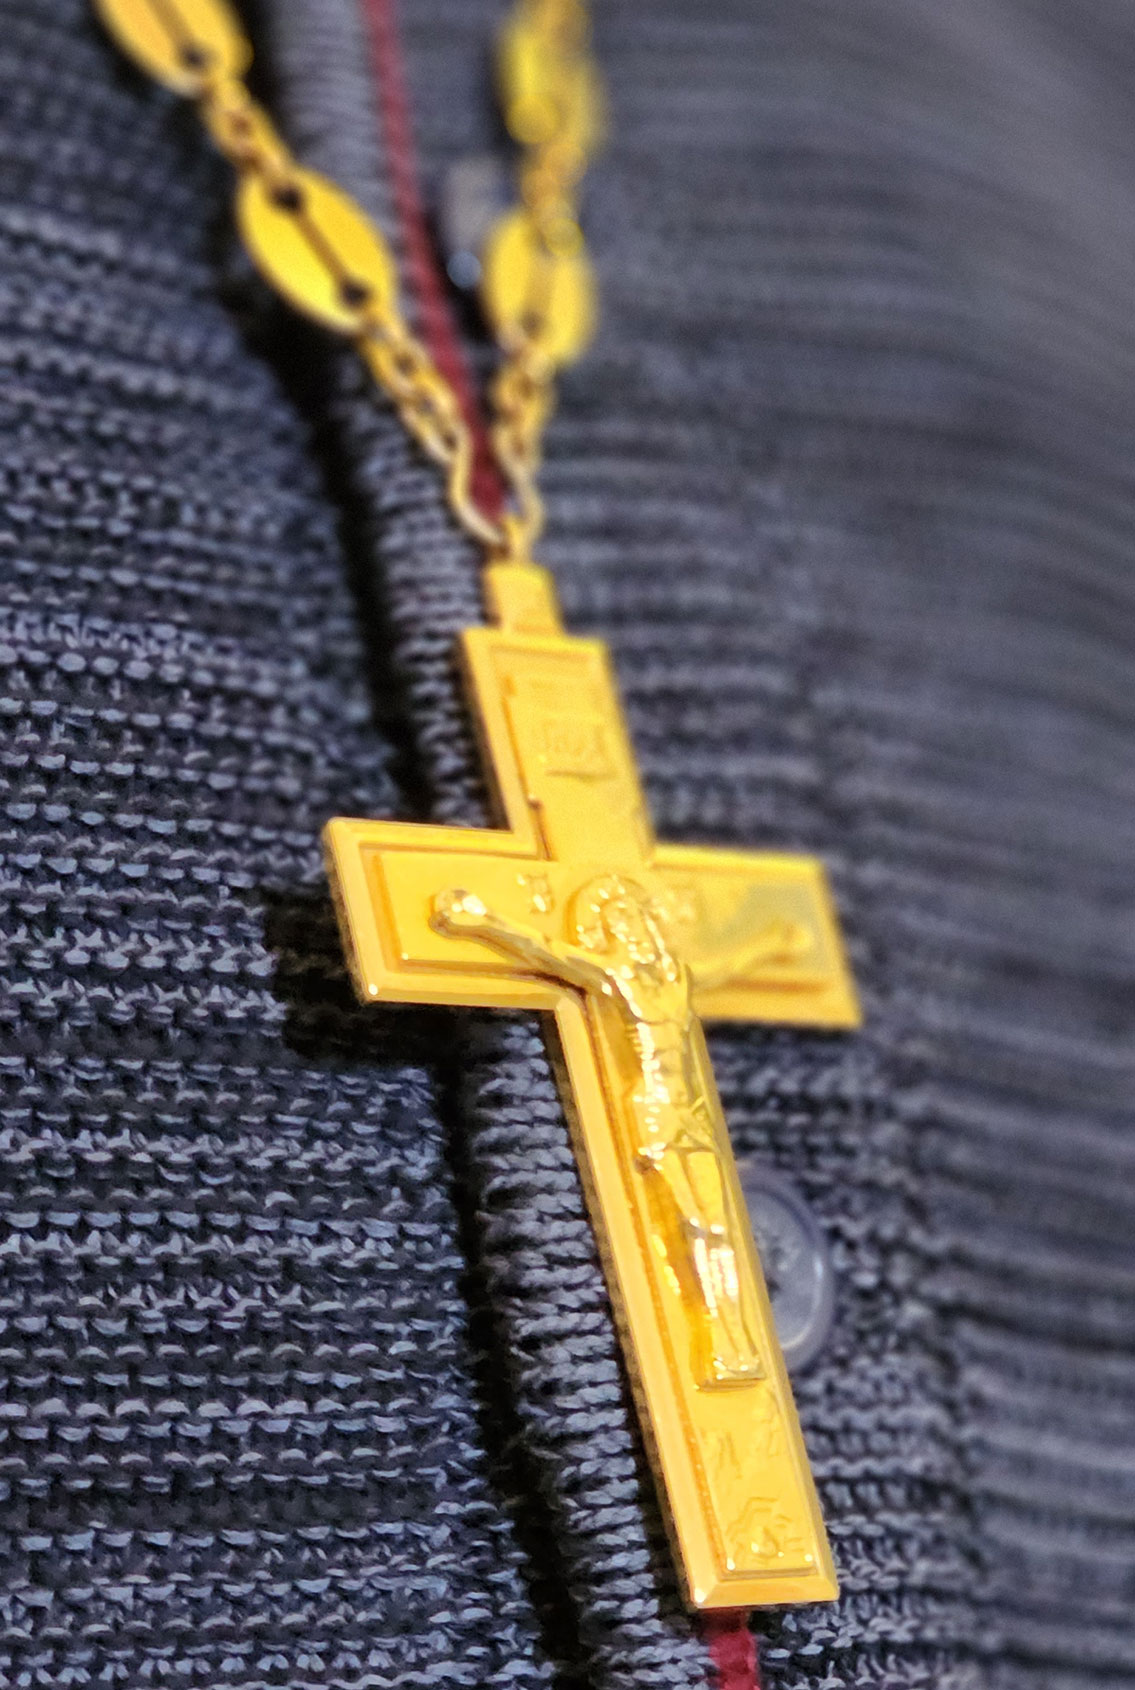 clothing with Orthodox symbols